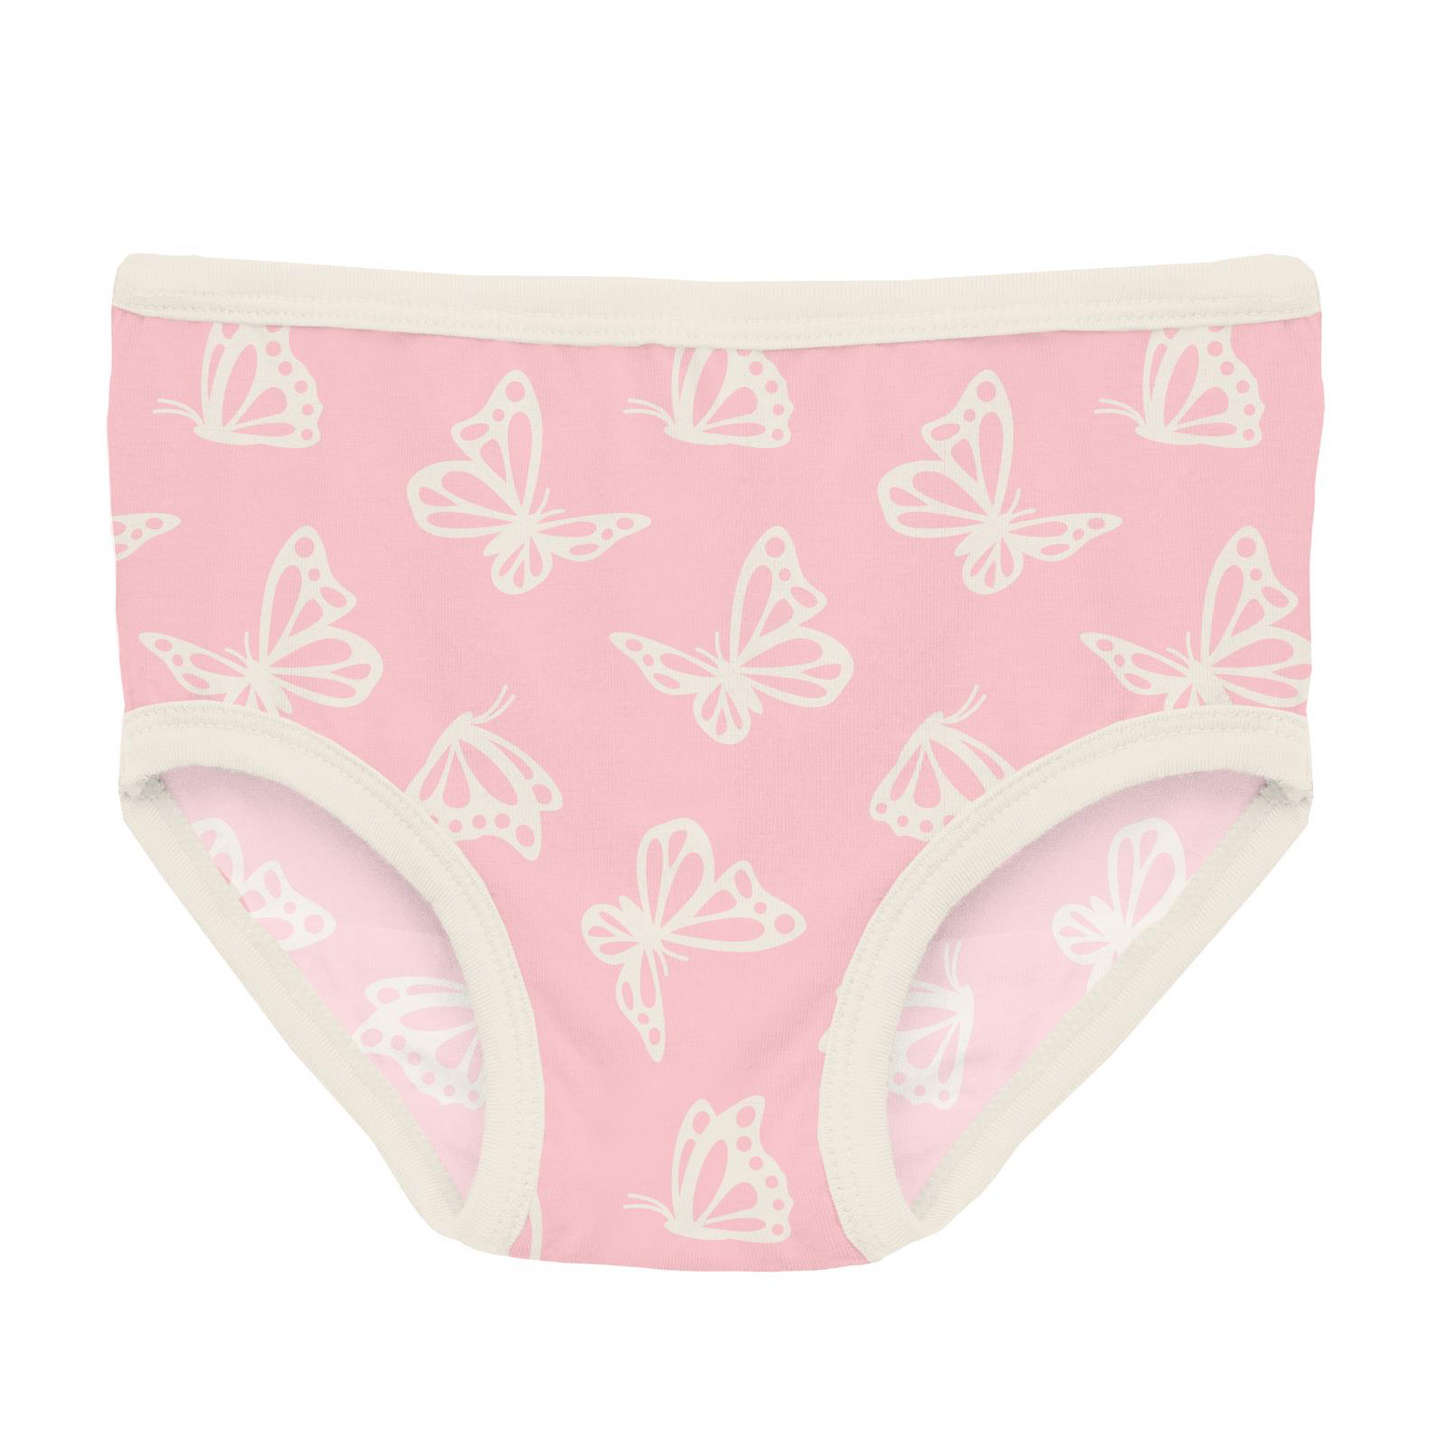 Lotus Butterfly Print Girl's Underwear